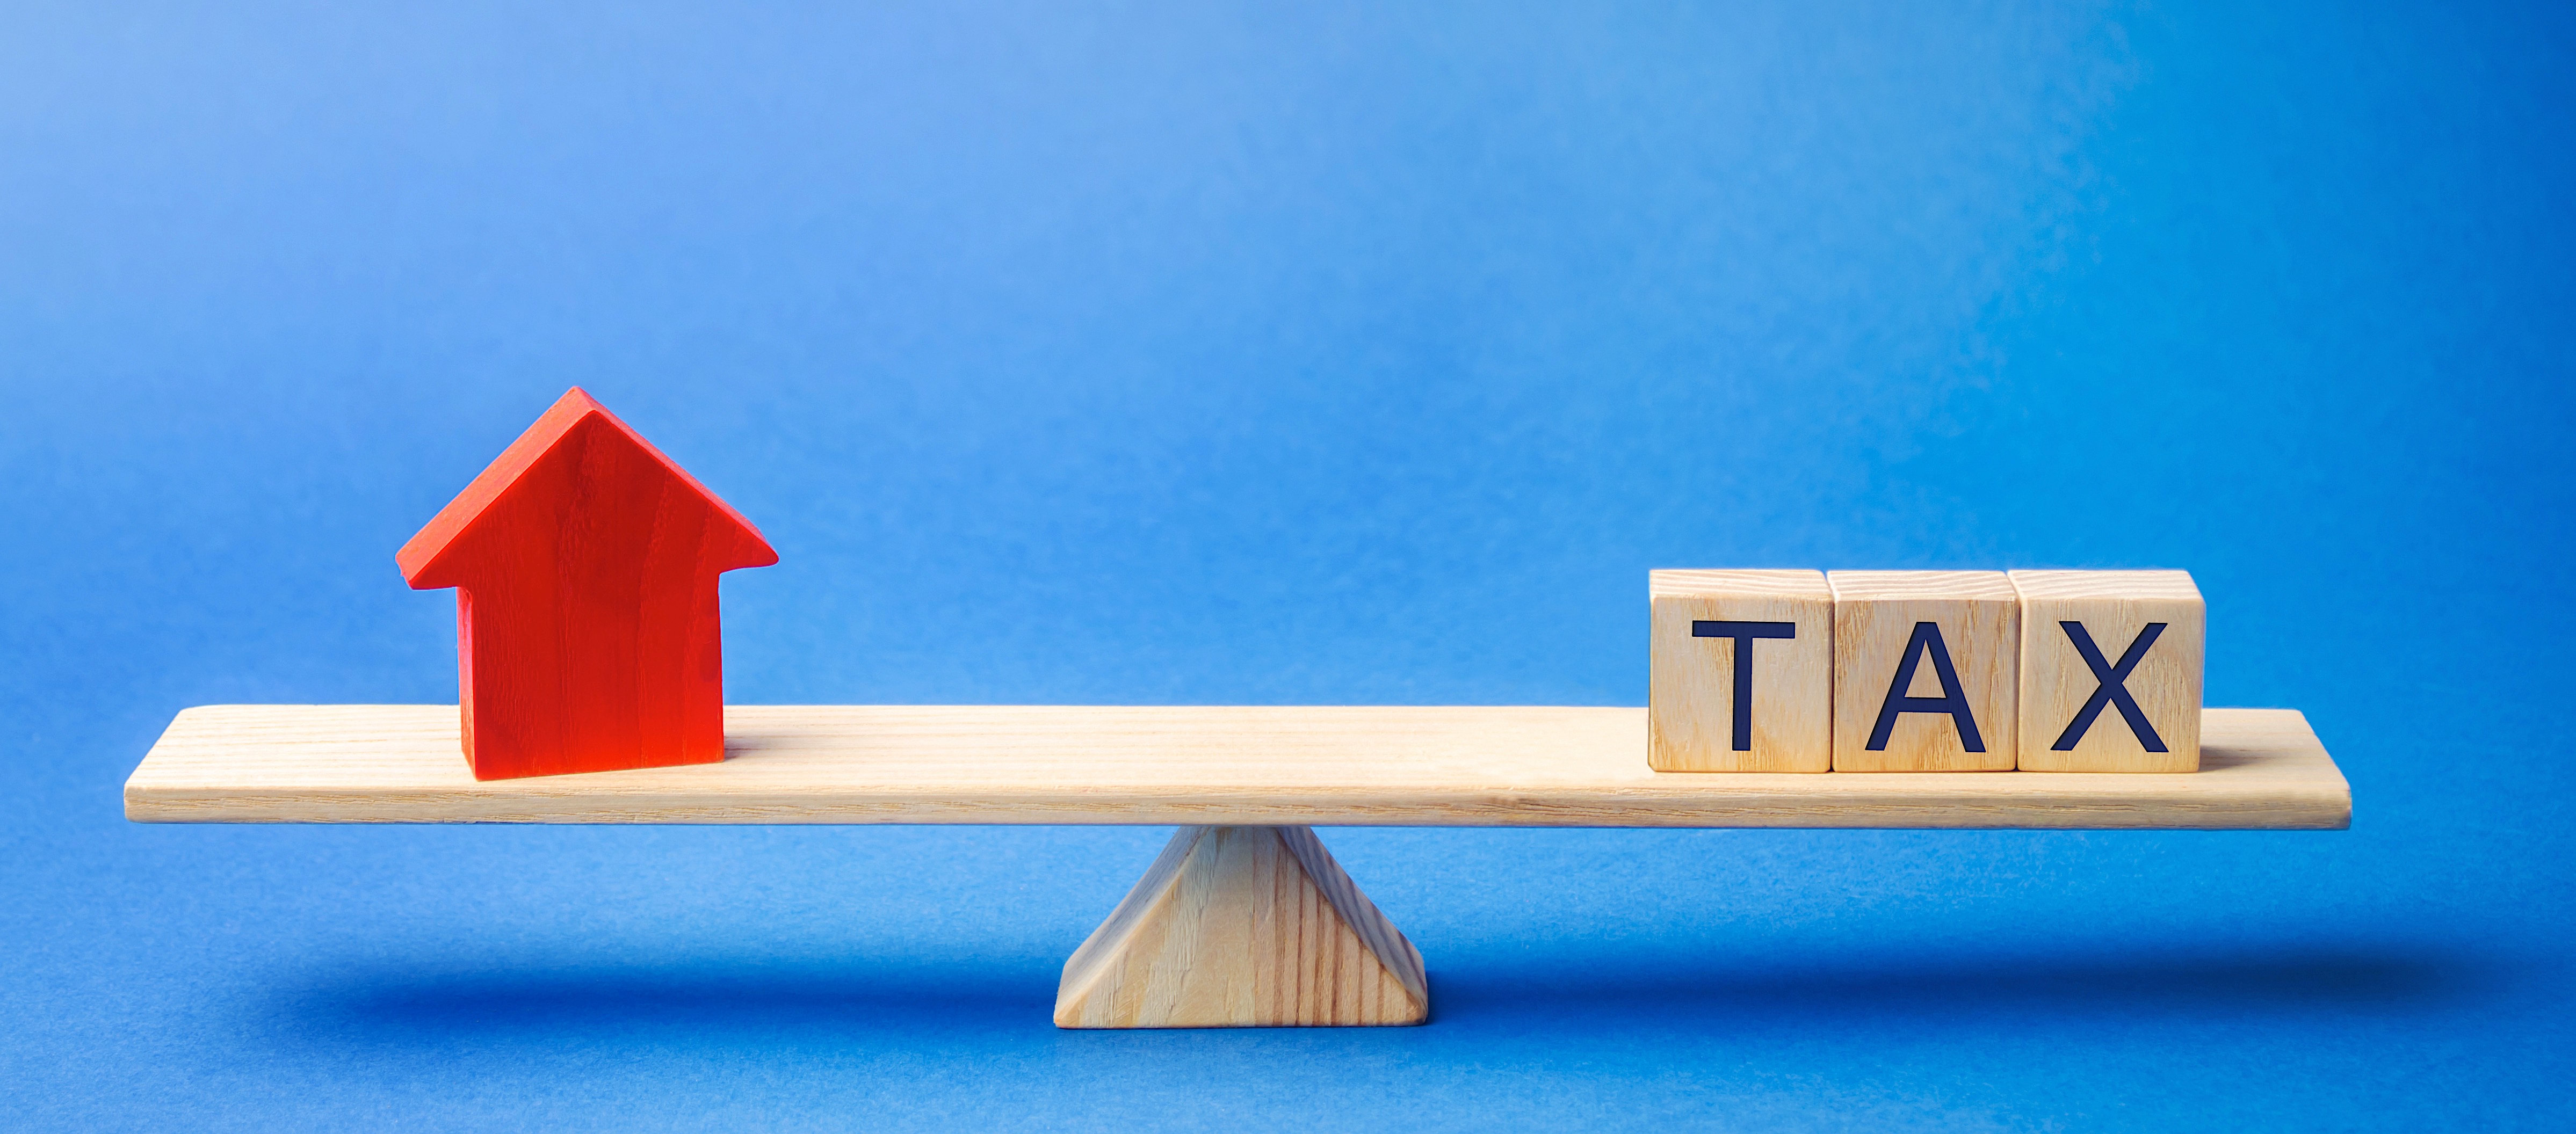 美国自住房与投资房报税有何区别？如何省税？